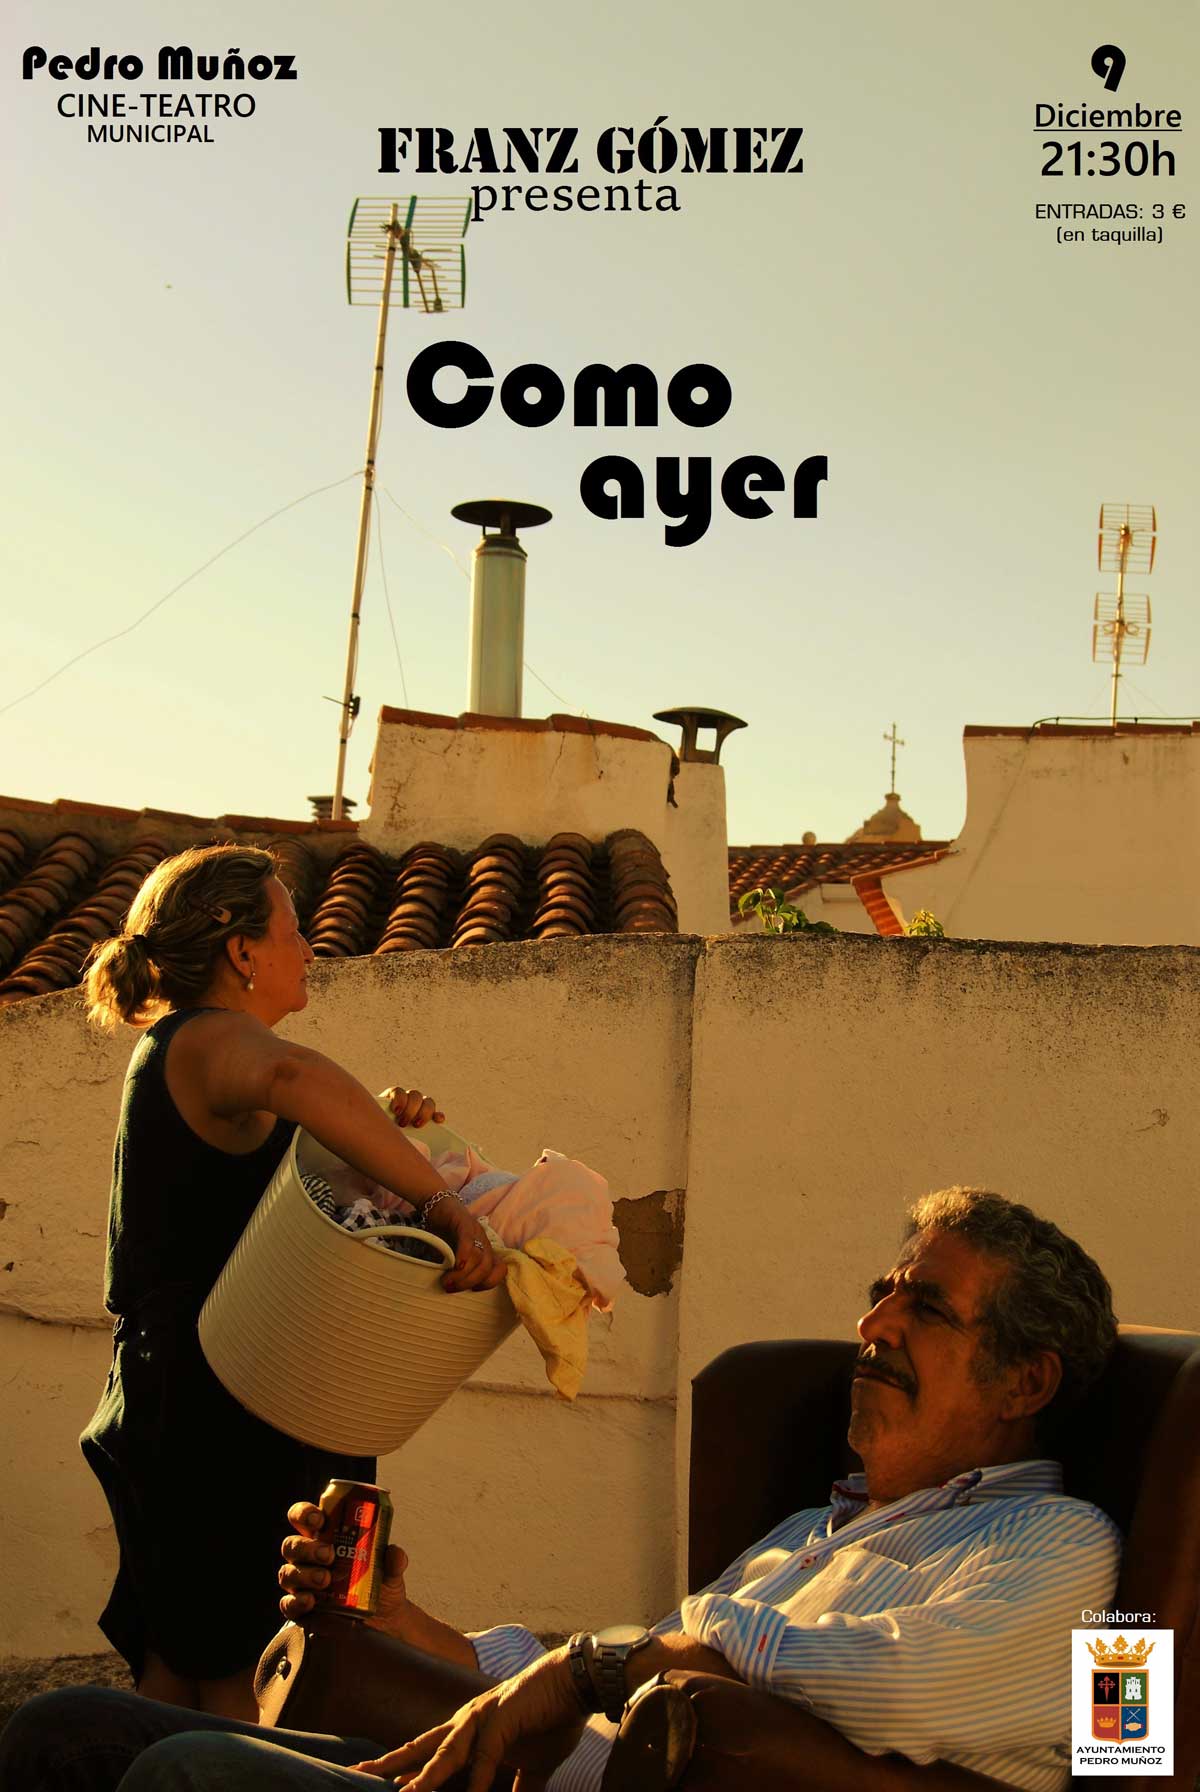 El viernes 9 de diciembre estreno en Pedro Muñoz de "Como ayer", obra escrita y dirigida por Franz Gómez